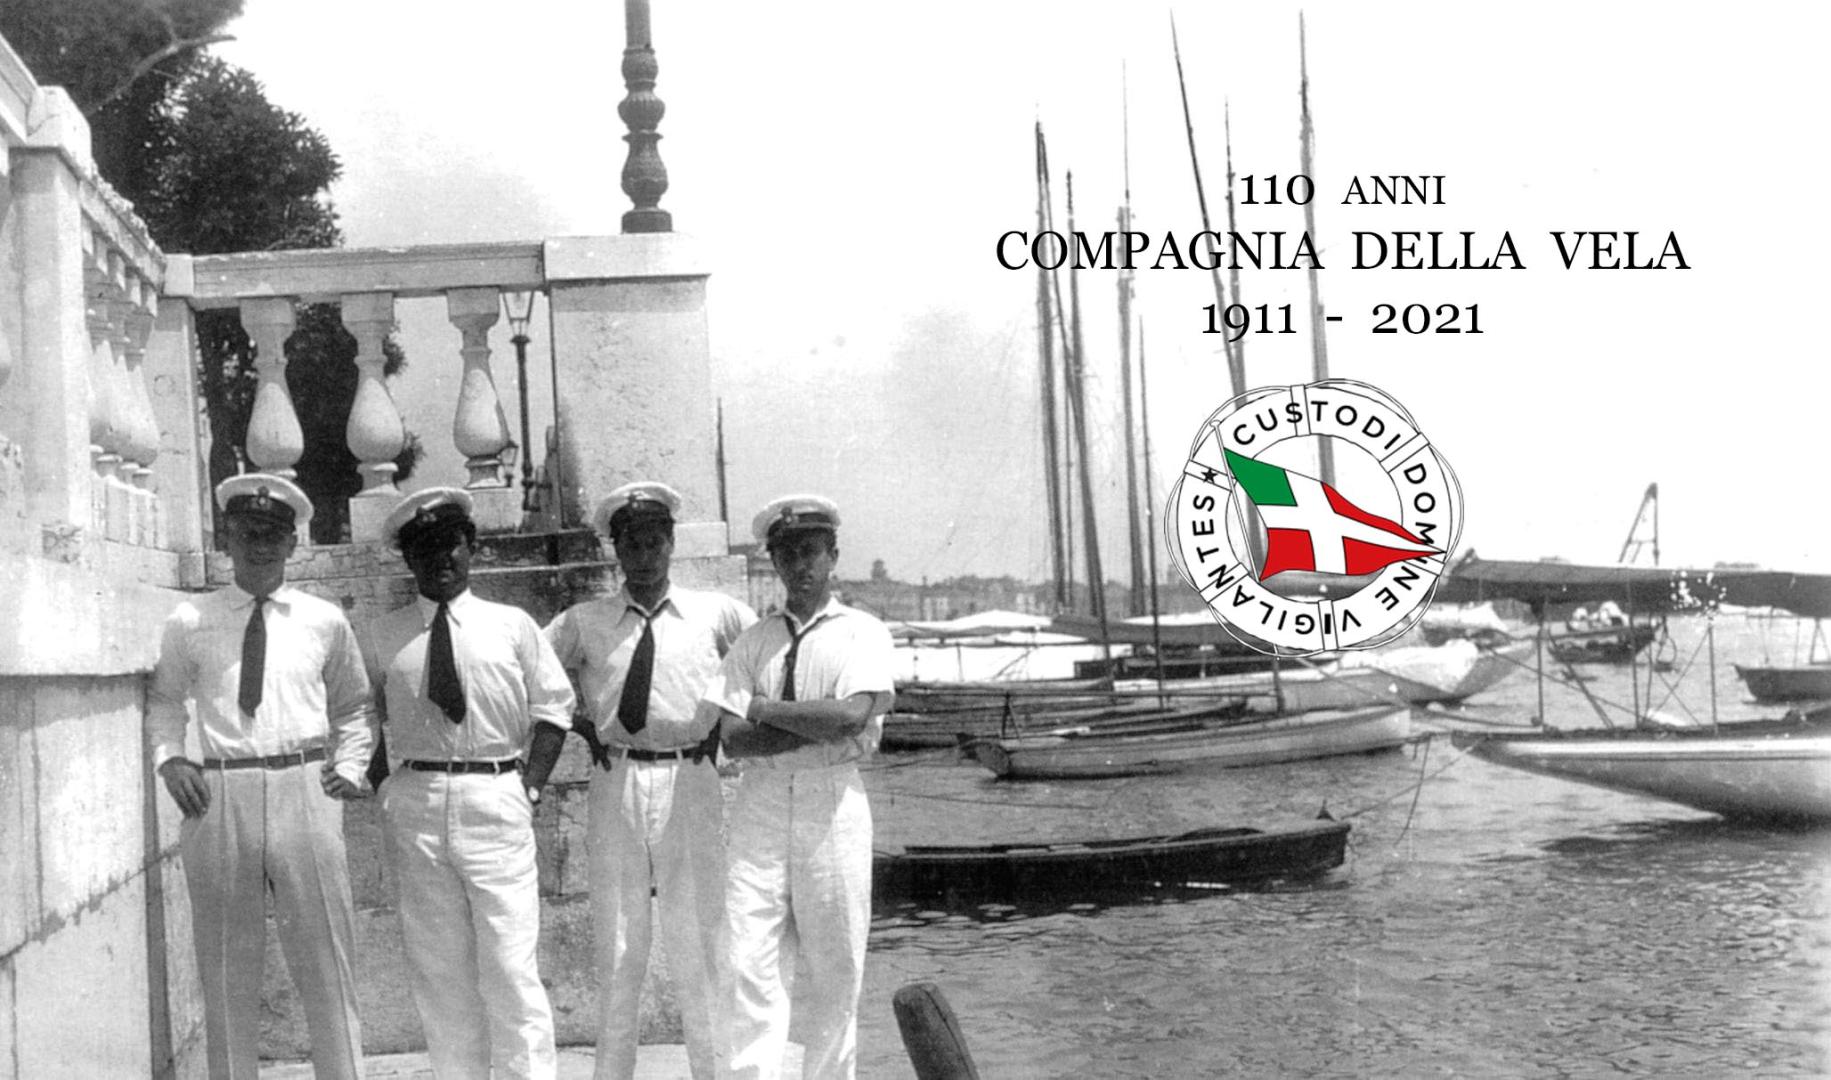 Buon vento Compagnia della Vela, 110 anni di storia e sport